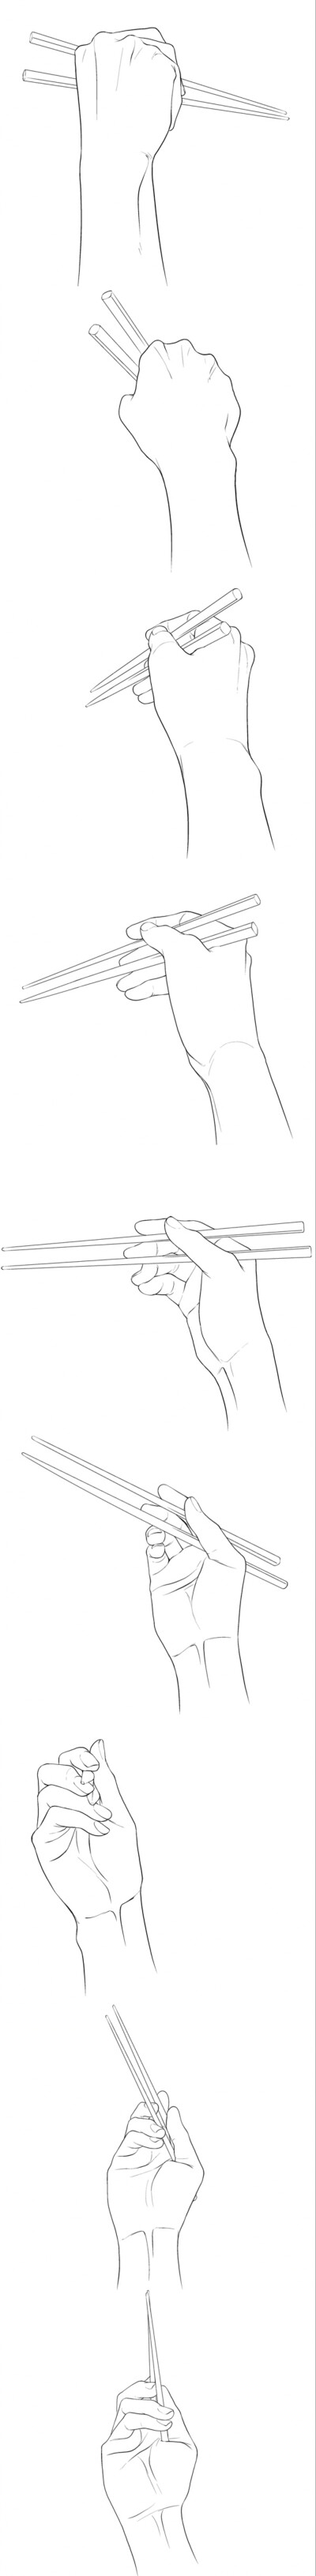 拿筷子的手怎么画图片